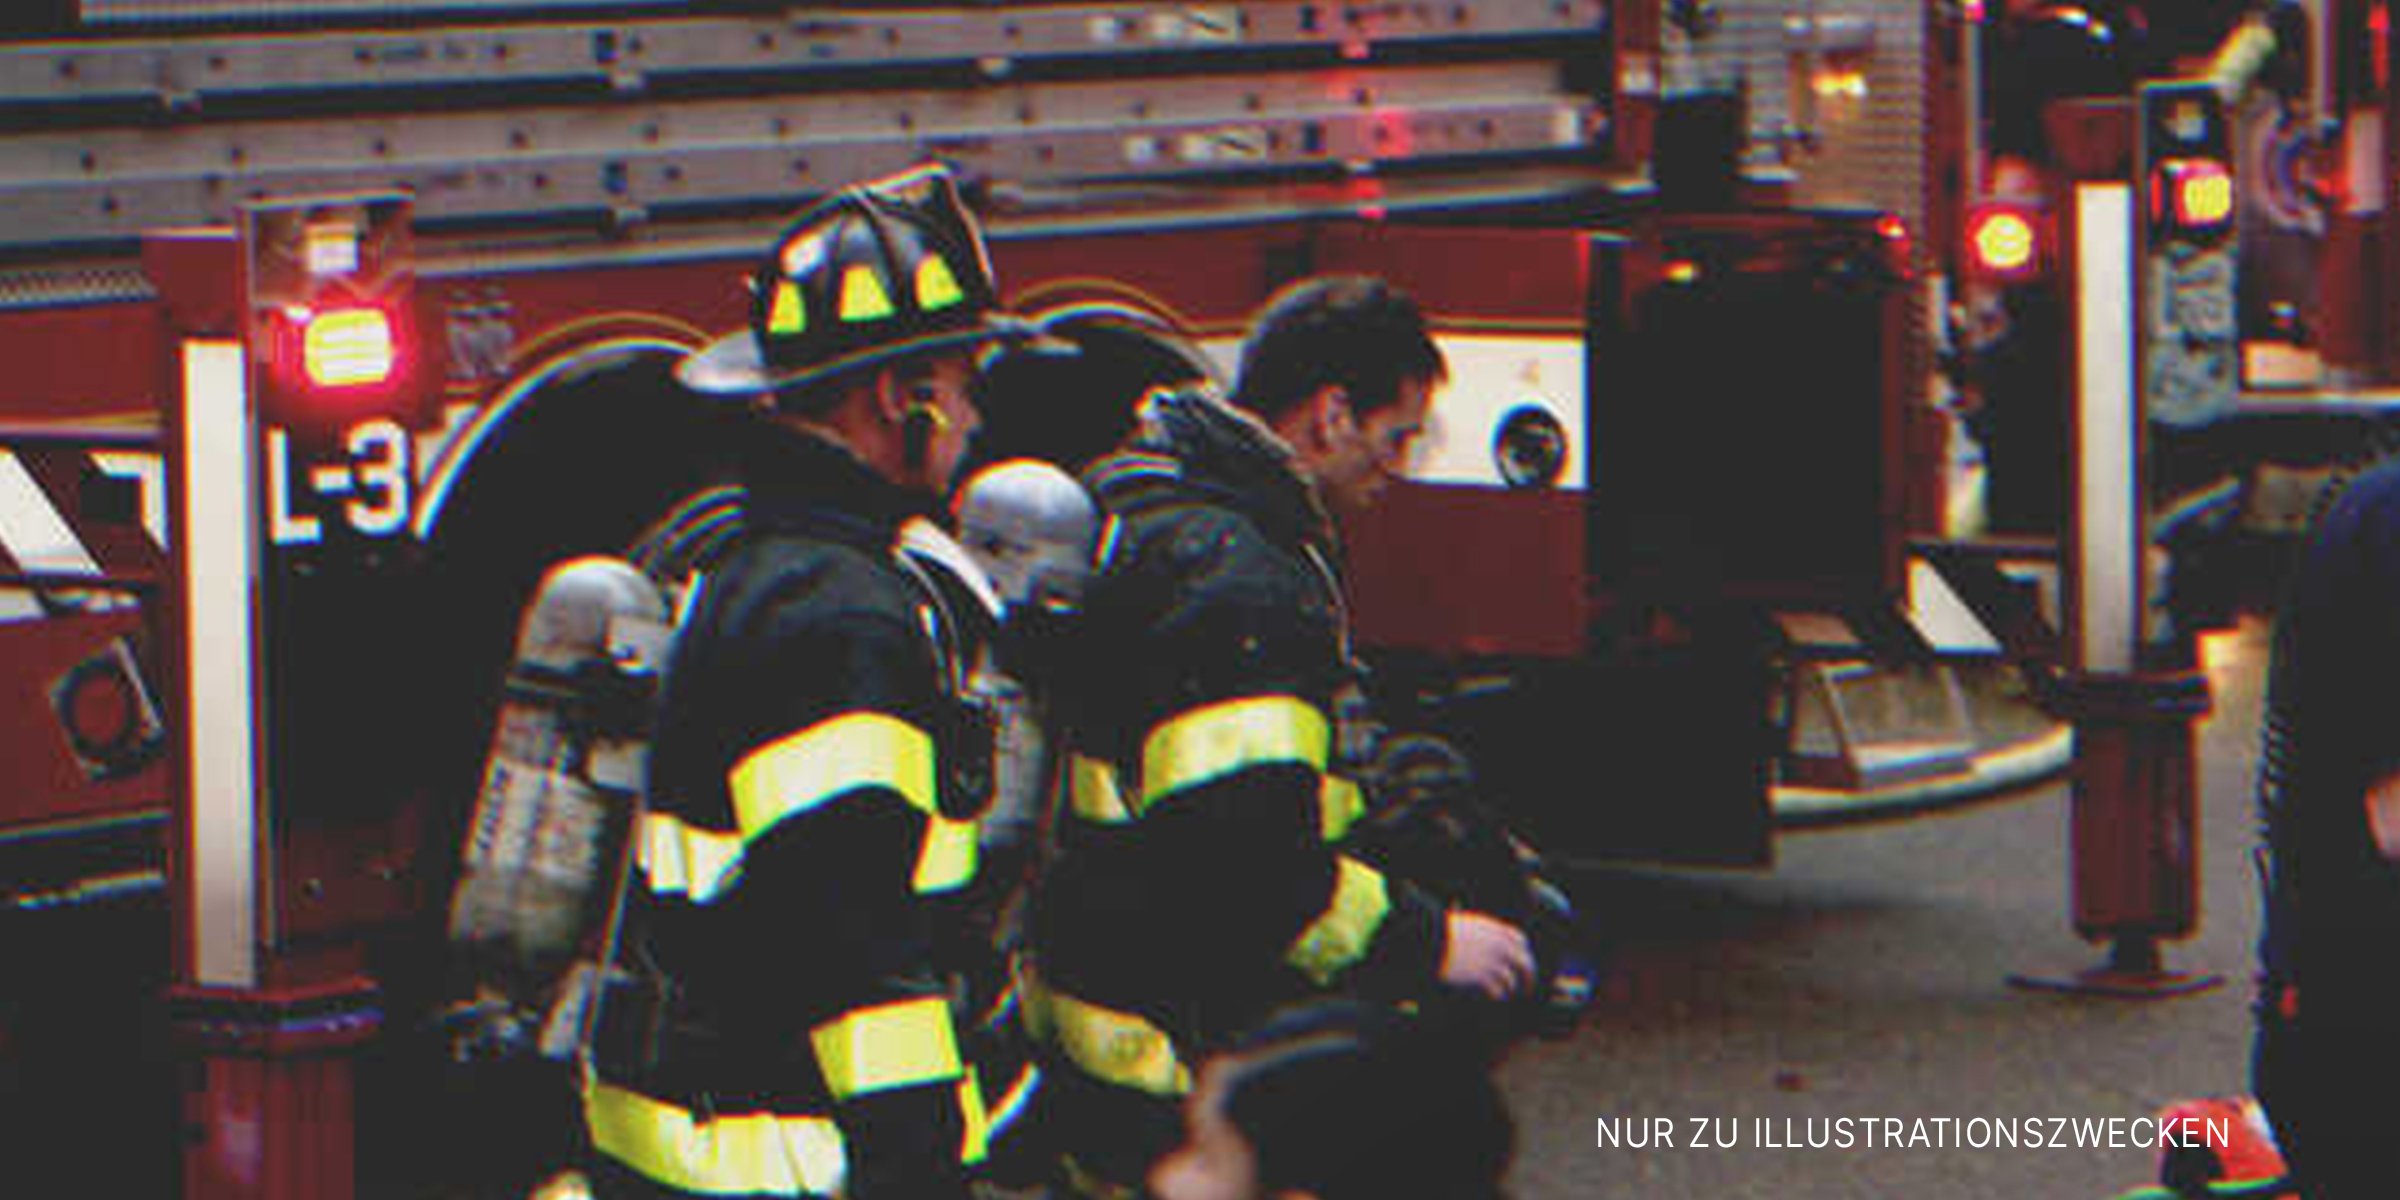 Feuerwehrmänner im Einsatz | Quelle: Flickr/bizarrellama